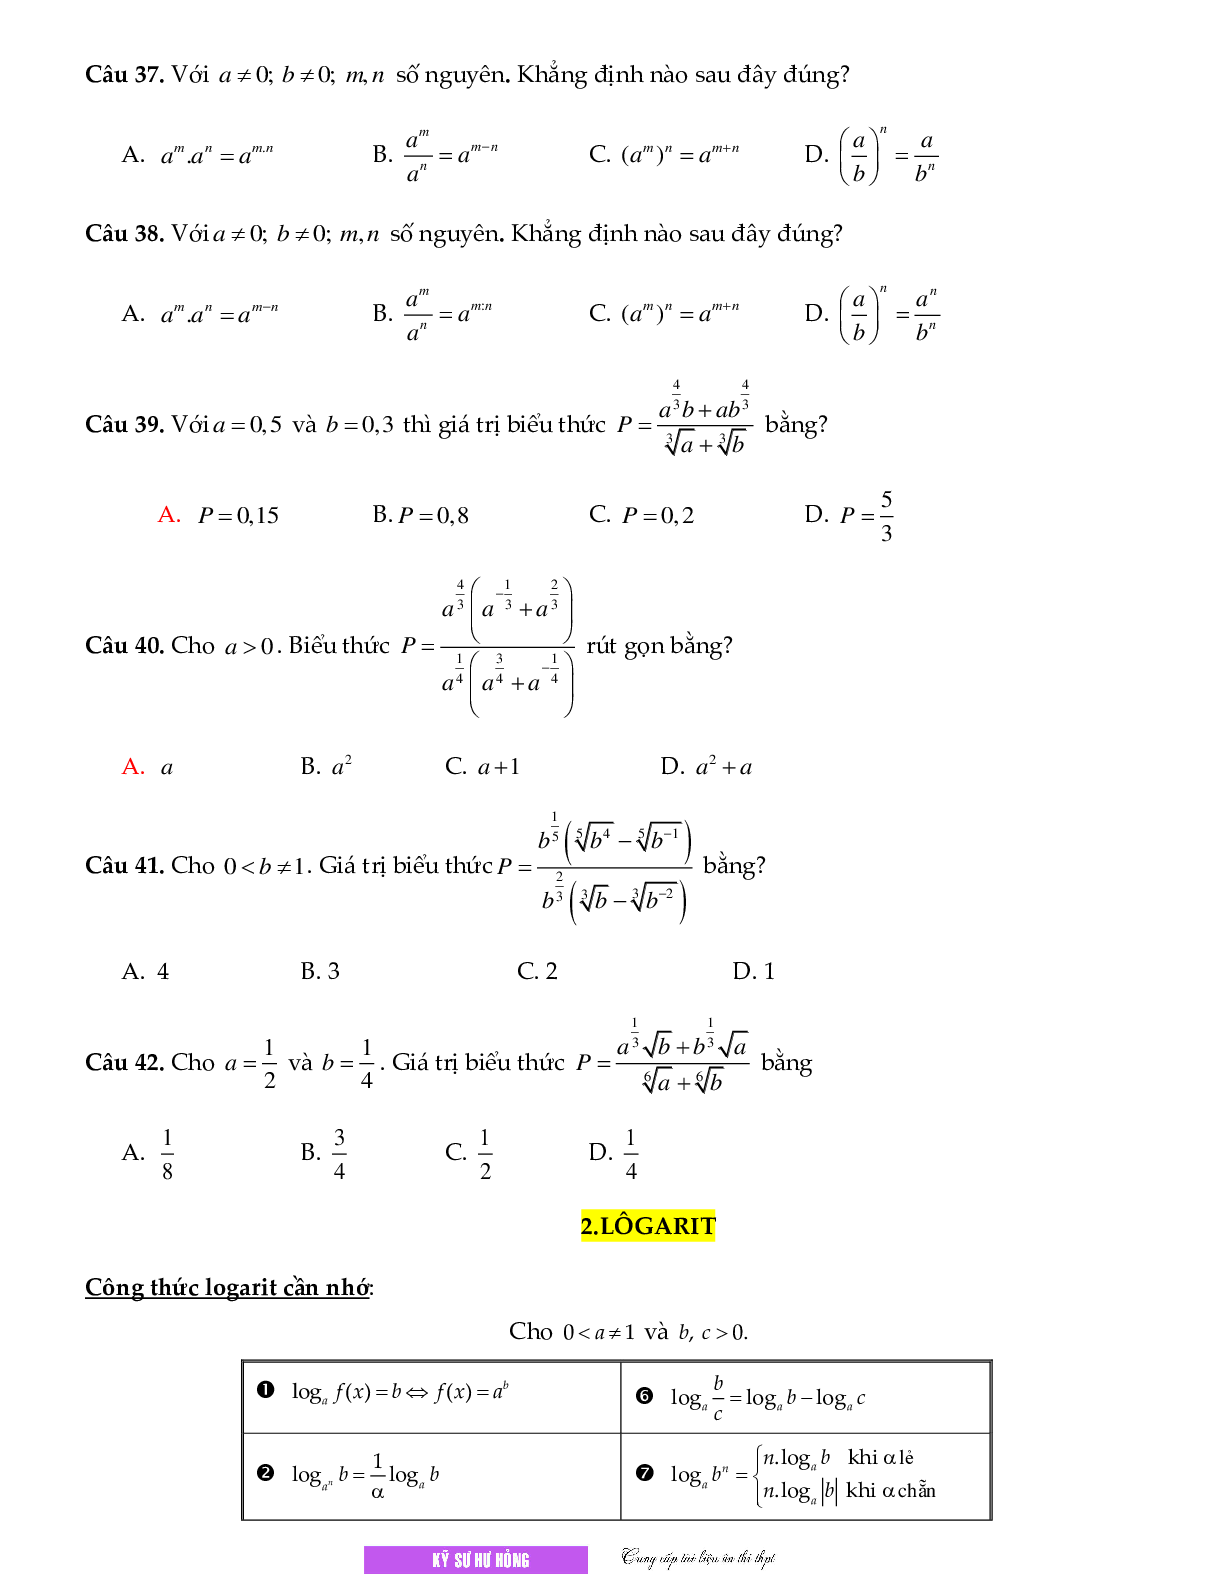 Chuyên đề Mũ - logarit môn Toán lớp 12 (trang 5)